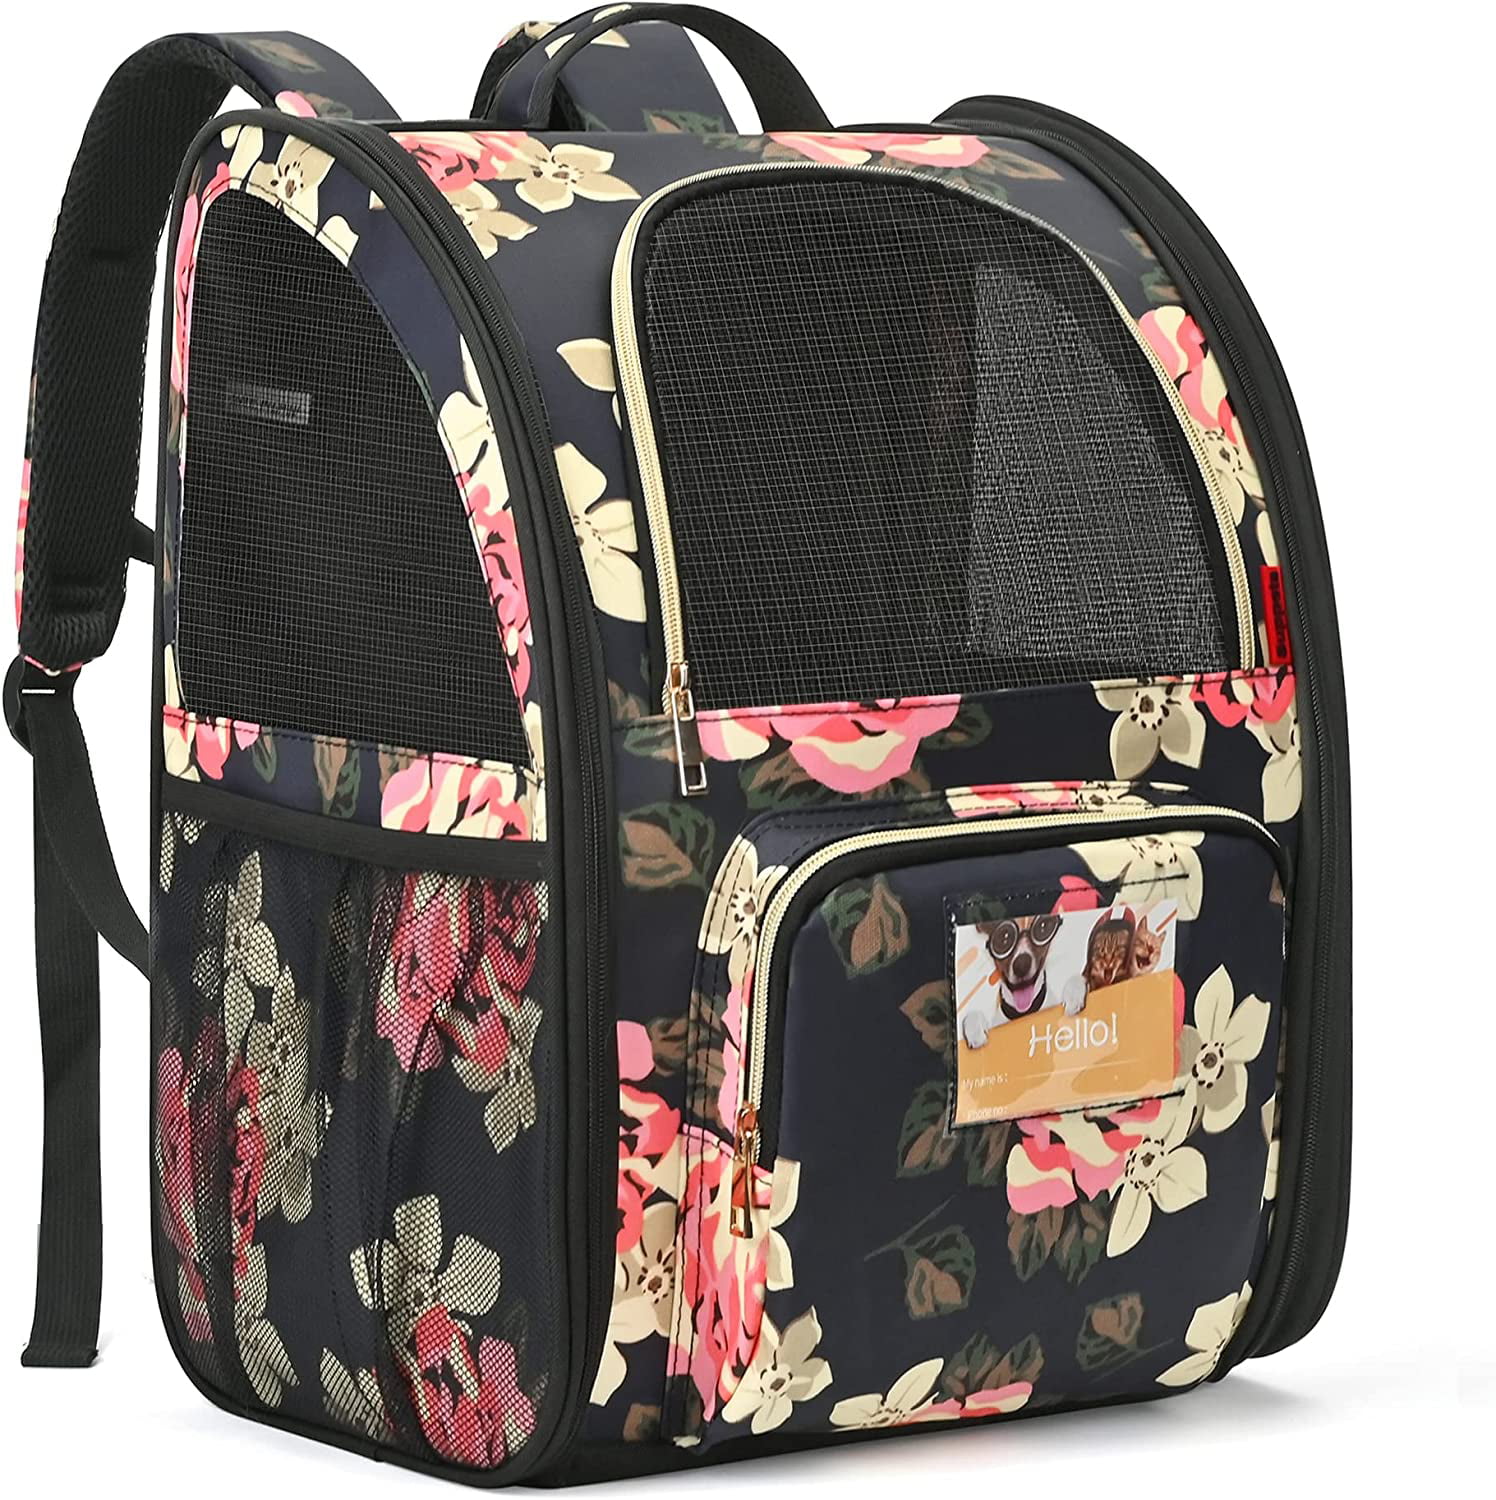 Backpack Cat Kitten Animal Travel Bag Hiking School Gift 15.7" Girl Pink New 